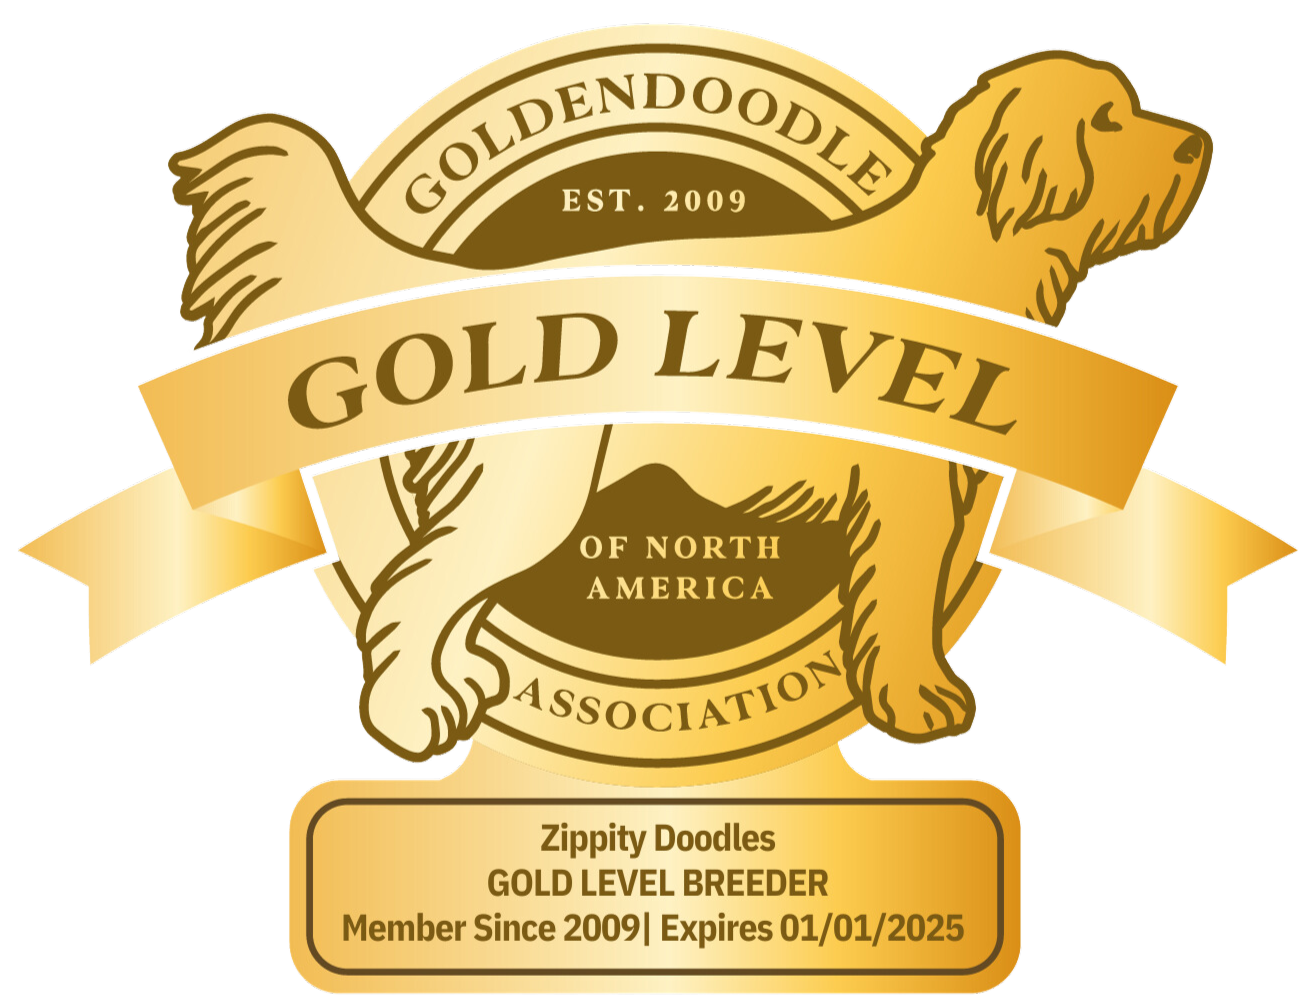 Zippity Doodles Goldendoodles GANA Gold Level Breeder